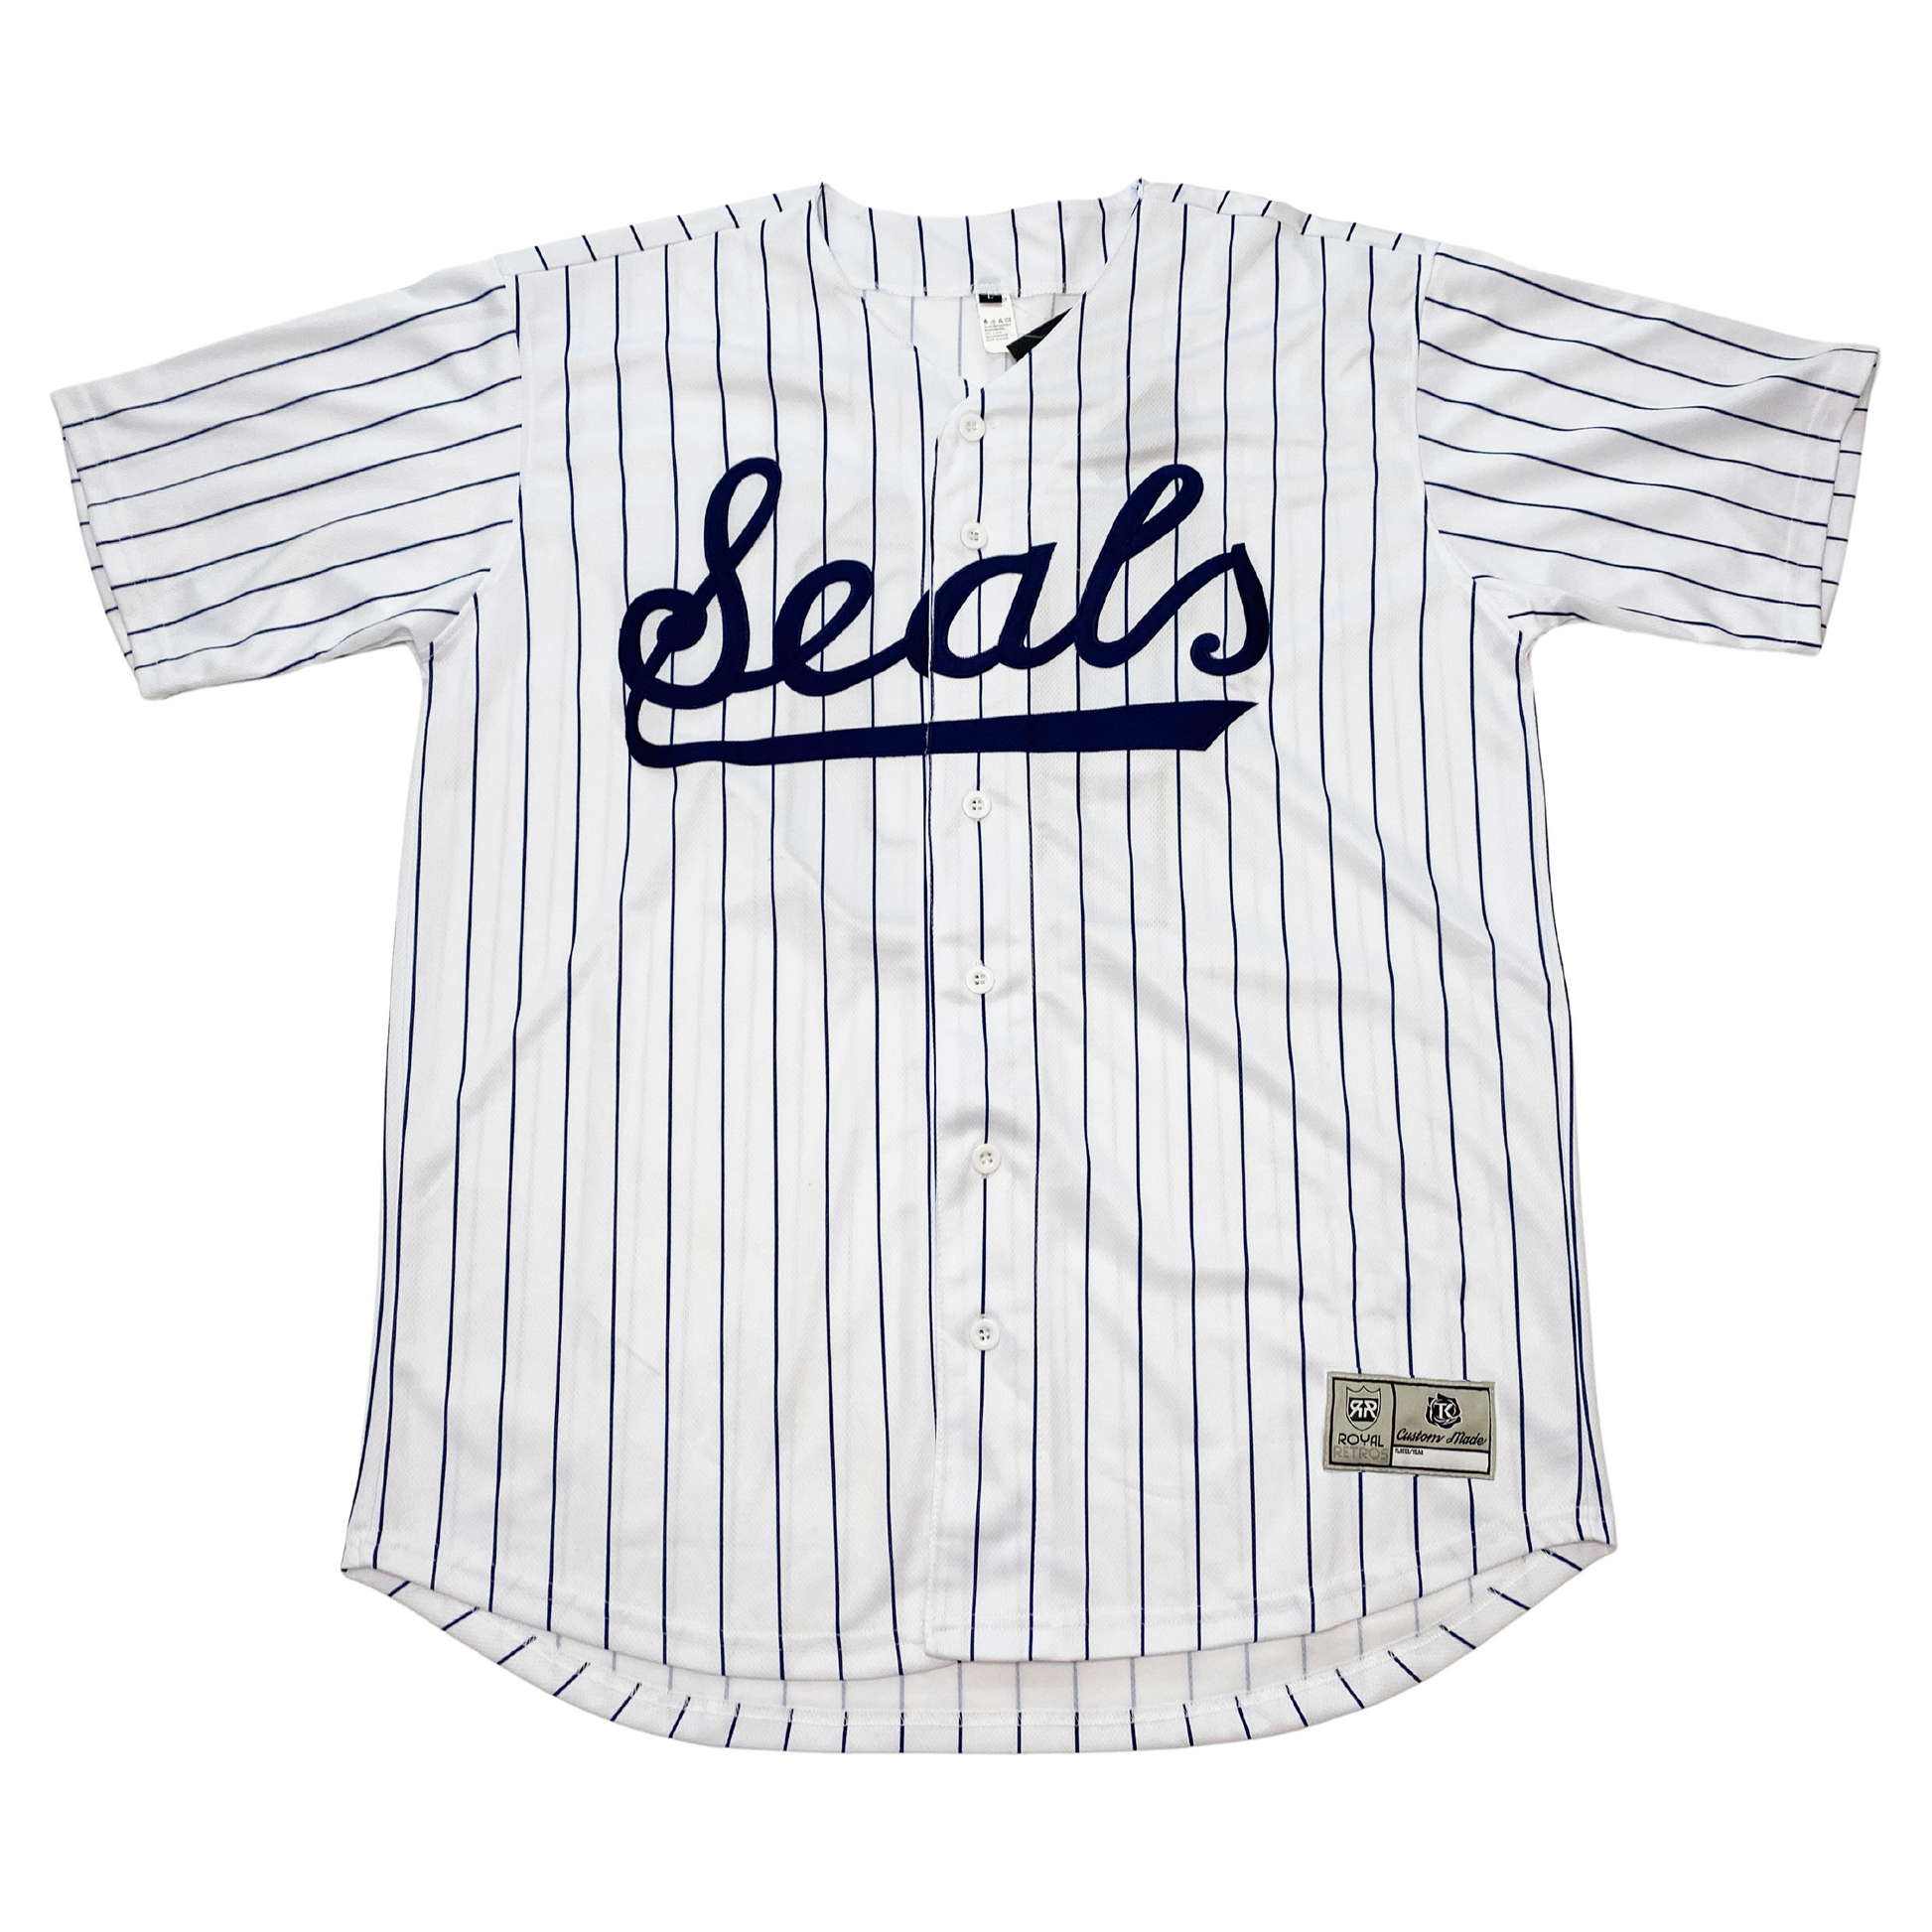 San Francisco Seals Baseball Jersey - Cream (1934) - XL - Royal Retros